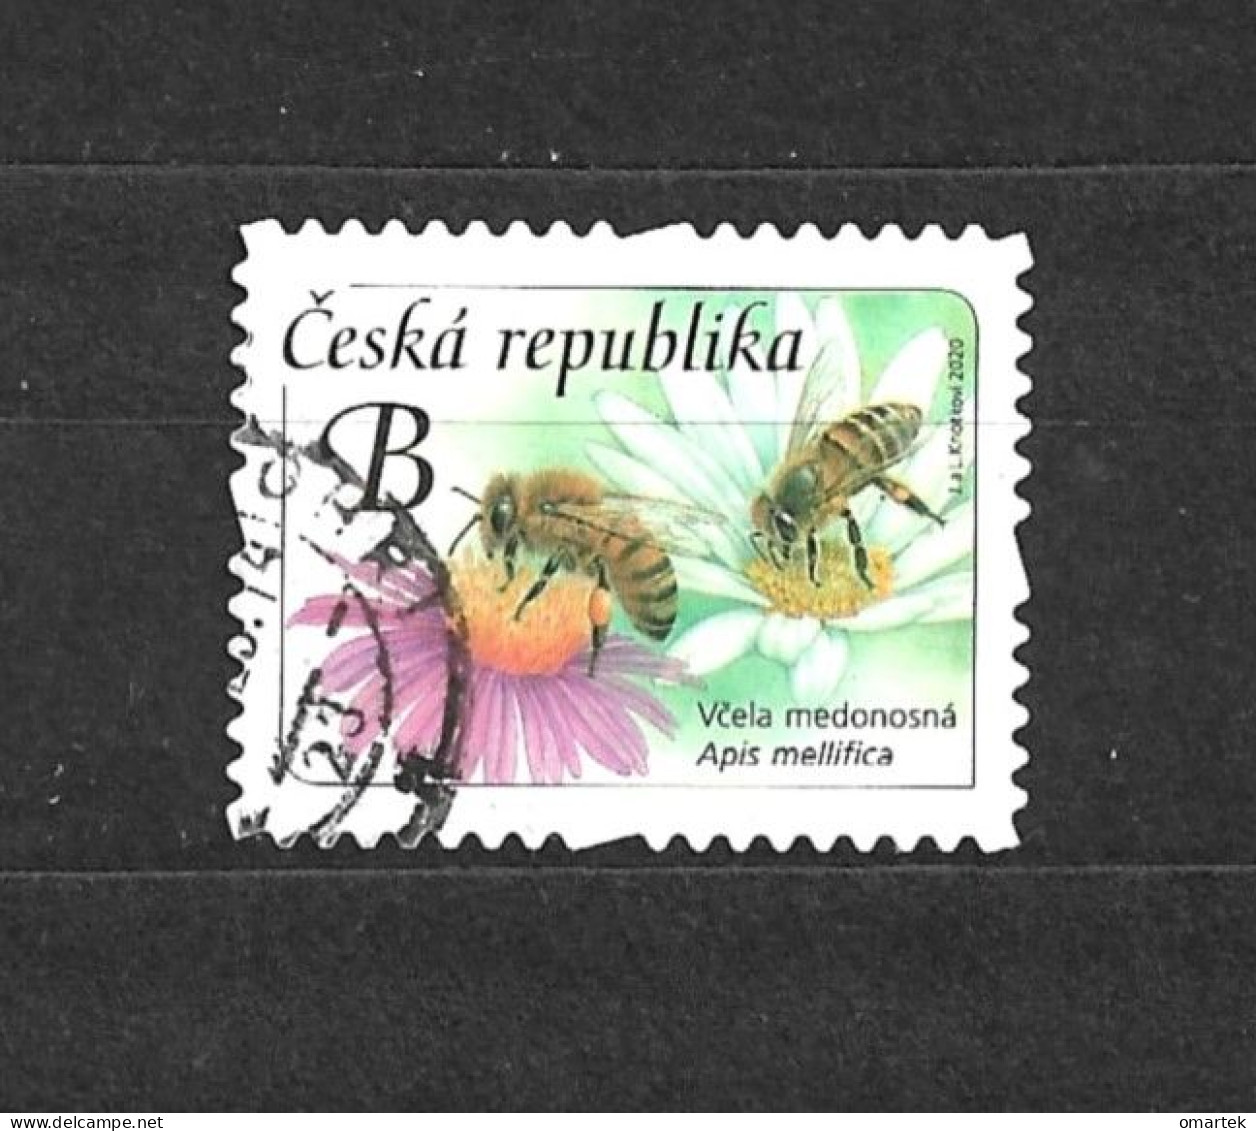 Czech Republic 2020 ⊙ Mi 1067 Sc 3824 Yt 943 Honey Bee. Tschechische Republik. C13 - Usados